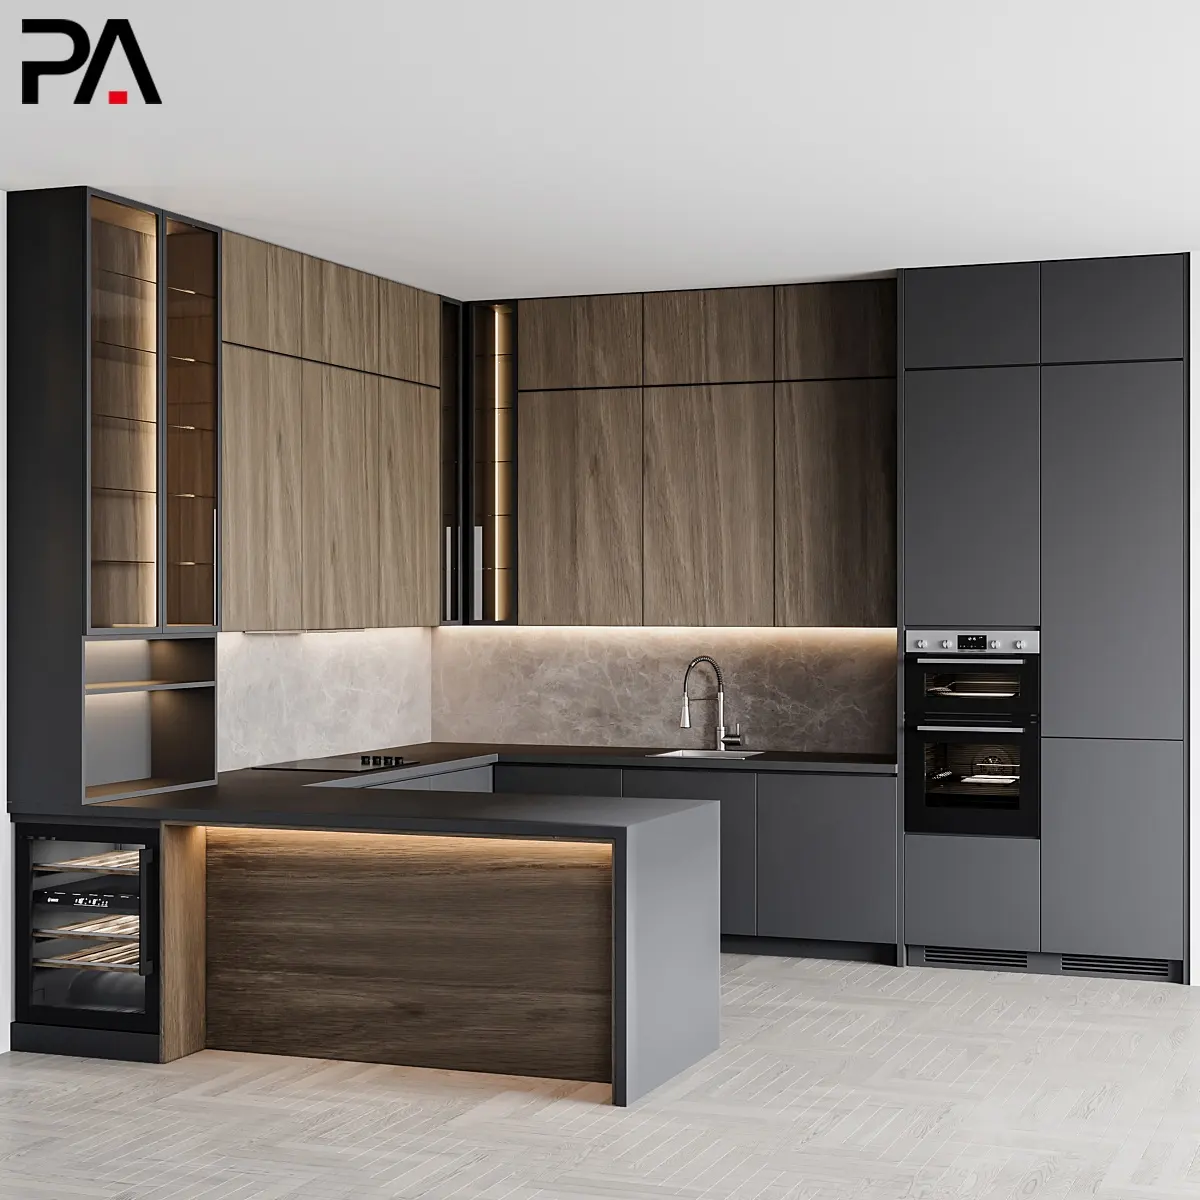 PA fabricantes noz madeira cor sinterizado pedra contraplacado modernas cozinha contador cocina armário